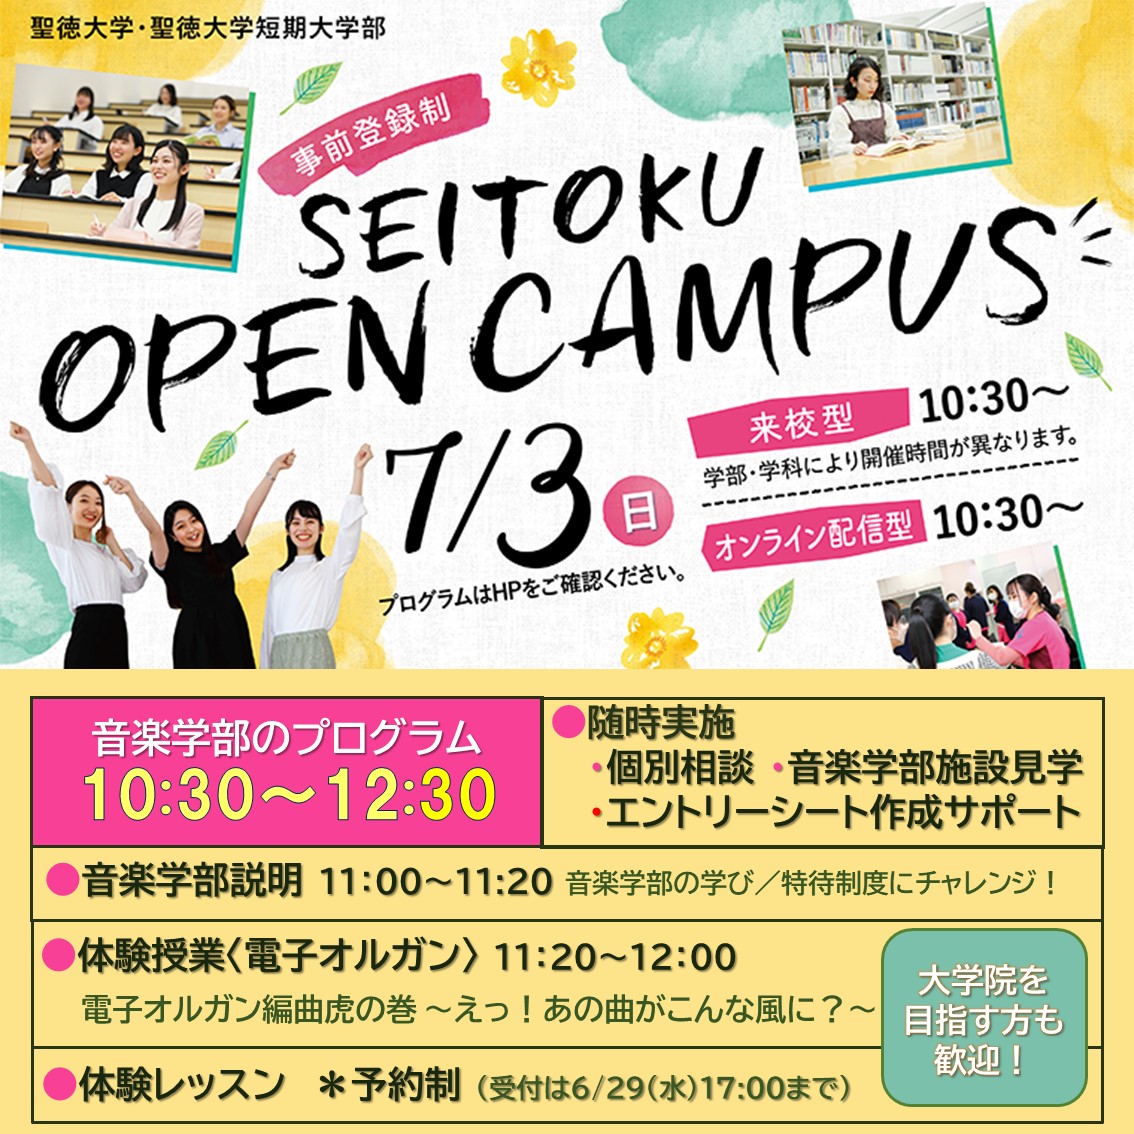 7月3日(日) 来校型オープンキャンパスを開催します～オンライン個別相談も実施～〔事前登録制〕